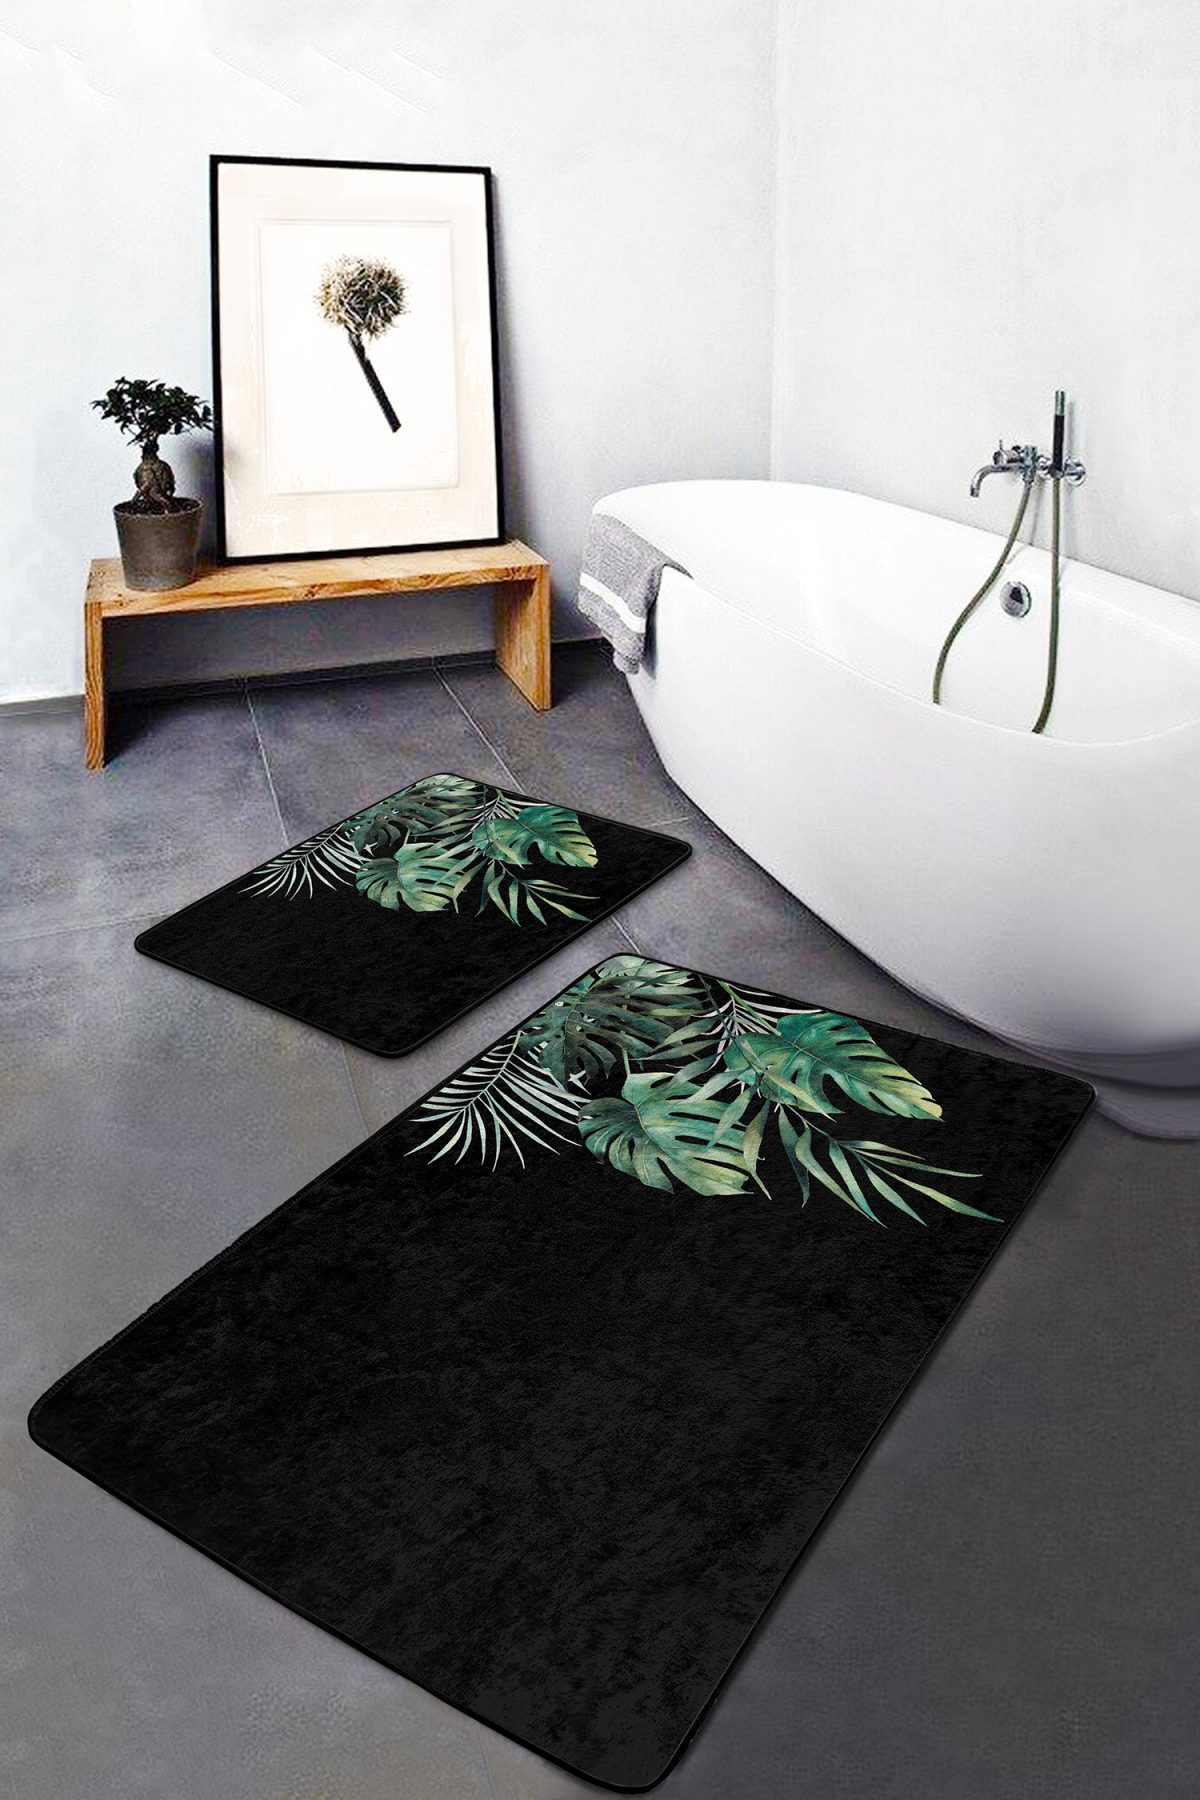 Siyah Zemin Tropik Yaprak Tasarımlı Dijital Baskılı 2'li Kaymaz Tabanlı Banyo & Mutfak Paspas Takımı Realhomes